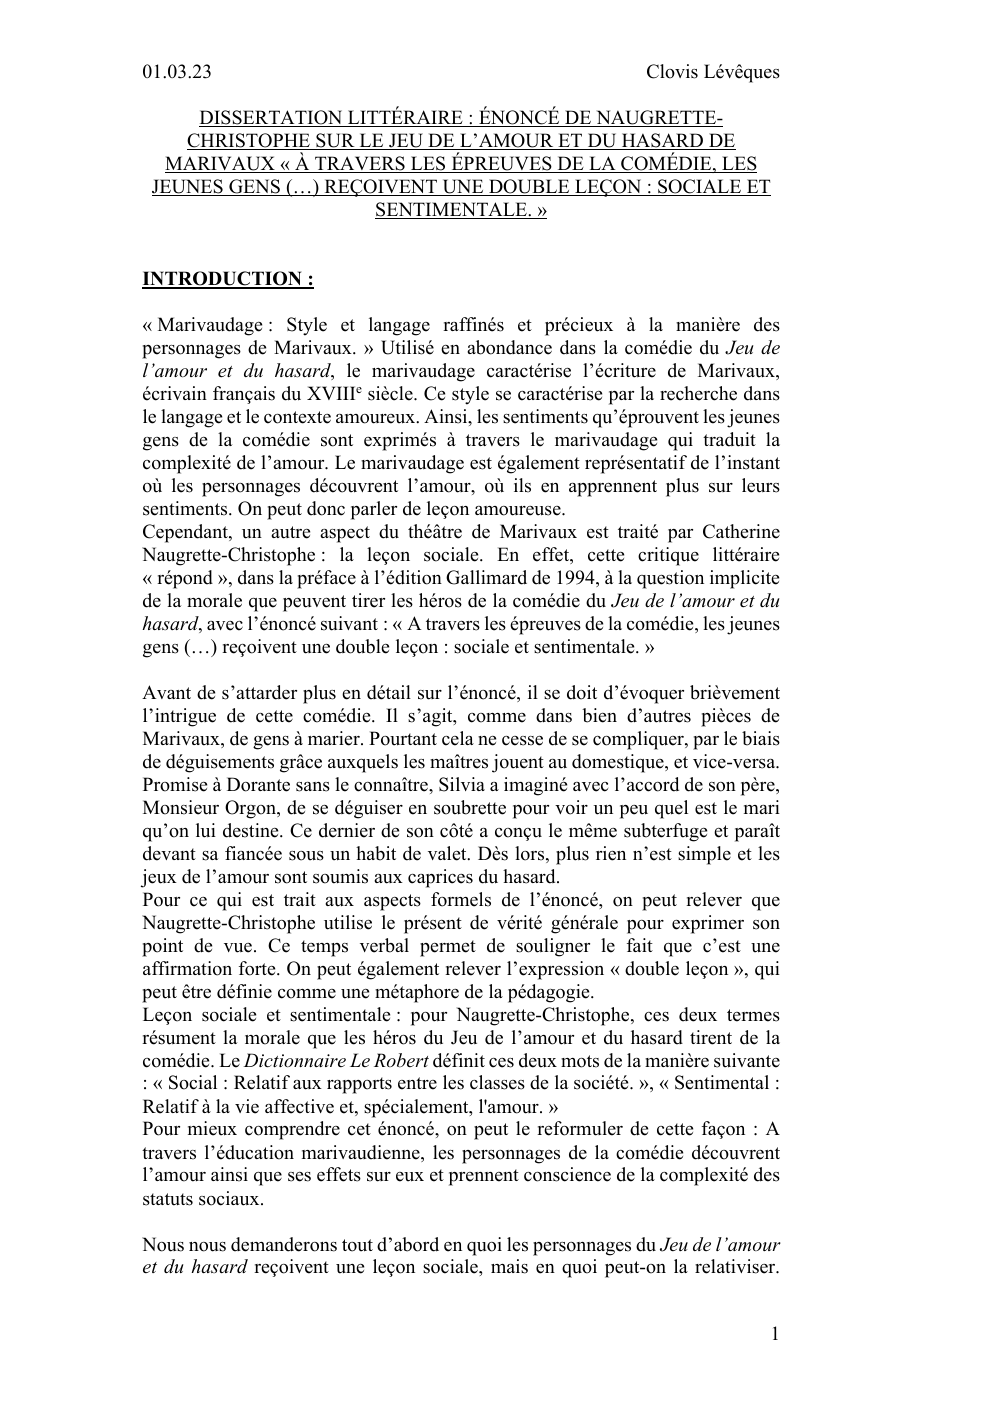 Prévisualisation du document Dissertation littéraire : Le Jeu de l'amour et du hasard, énoncé de Naugrette-Christophe